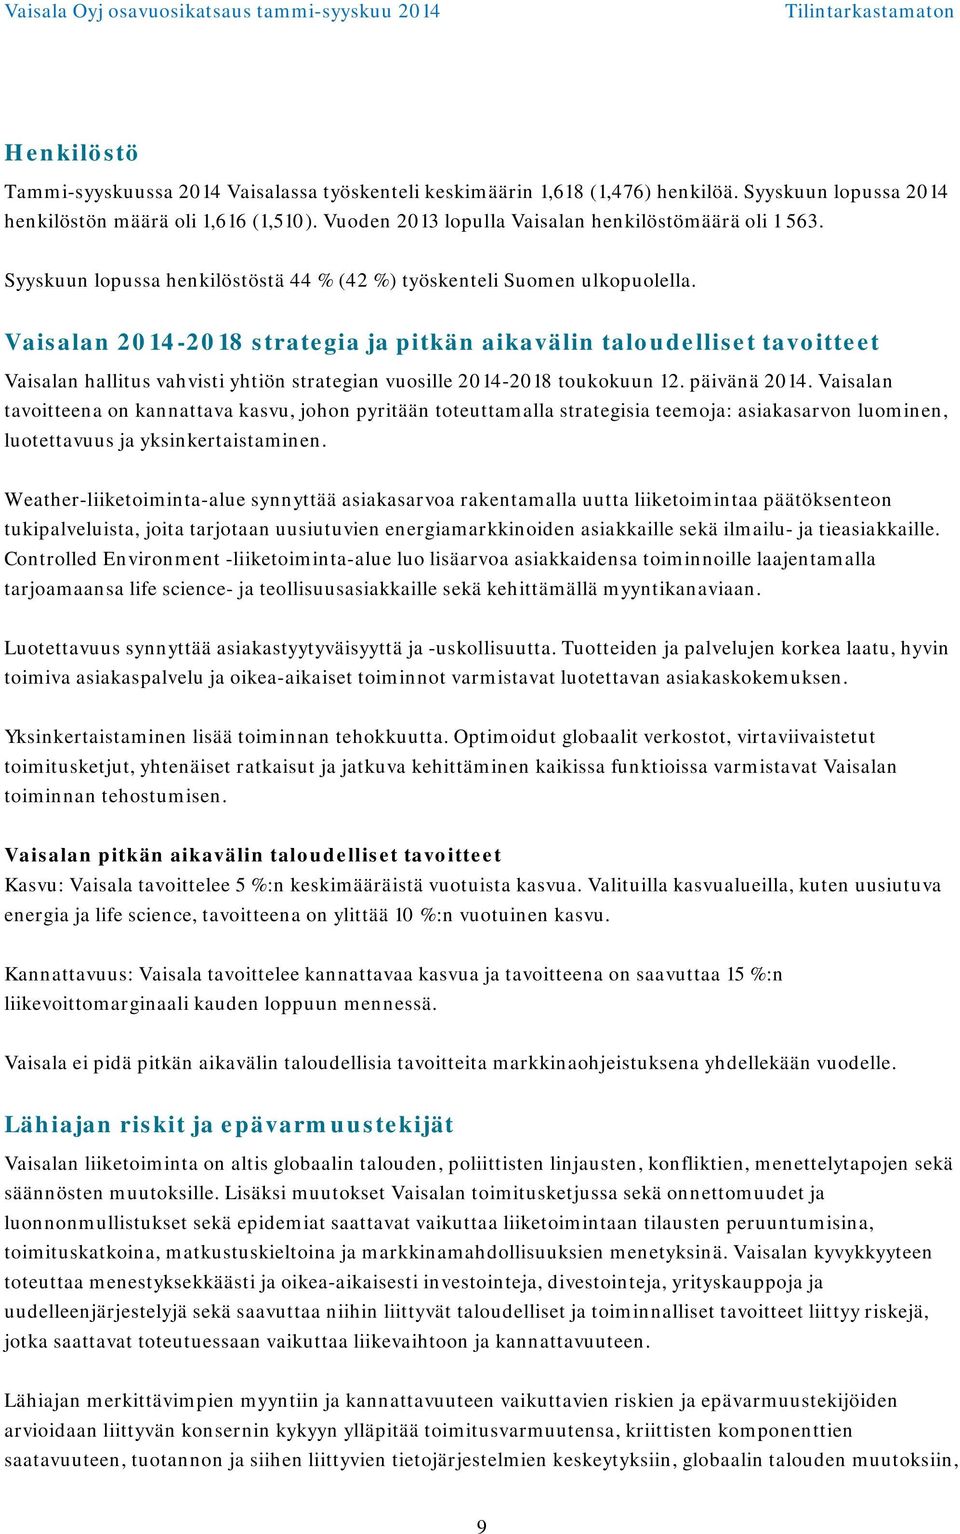 Vaisalan -2018 strategia ja pitkän aikavälin taloudelliset tavoitteet Vaisalan hallitus vahvisti yhtiön strategian vuosille -2018 toukokuun 12. päivänä.